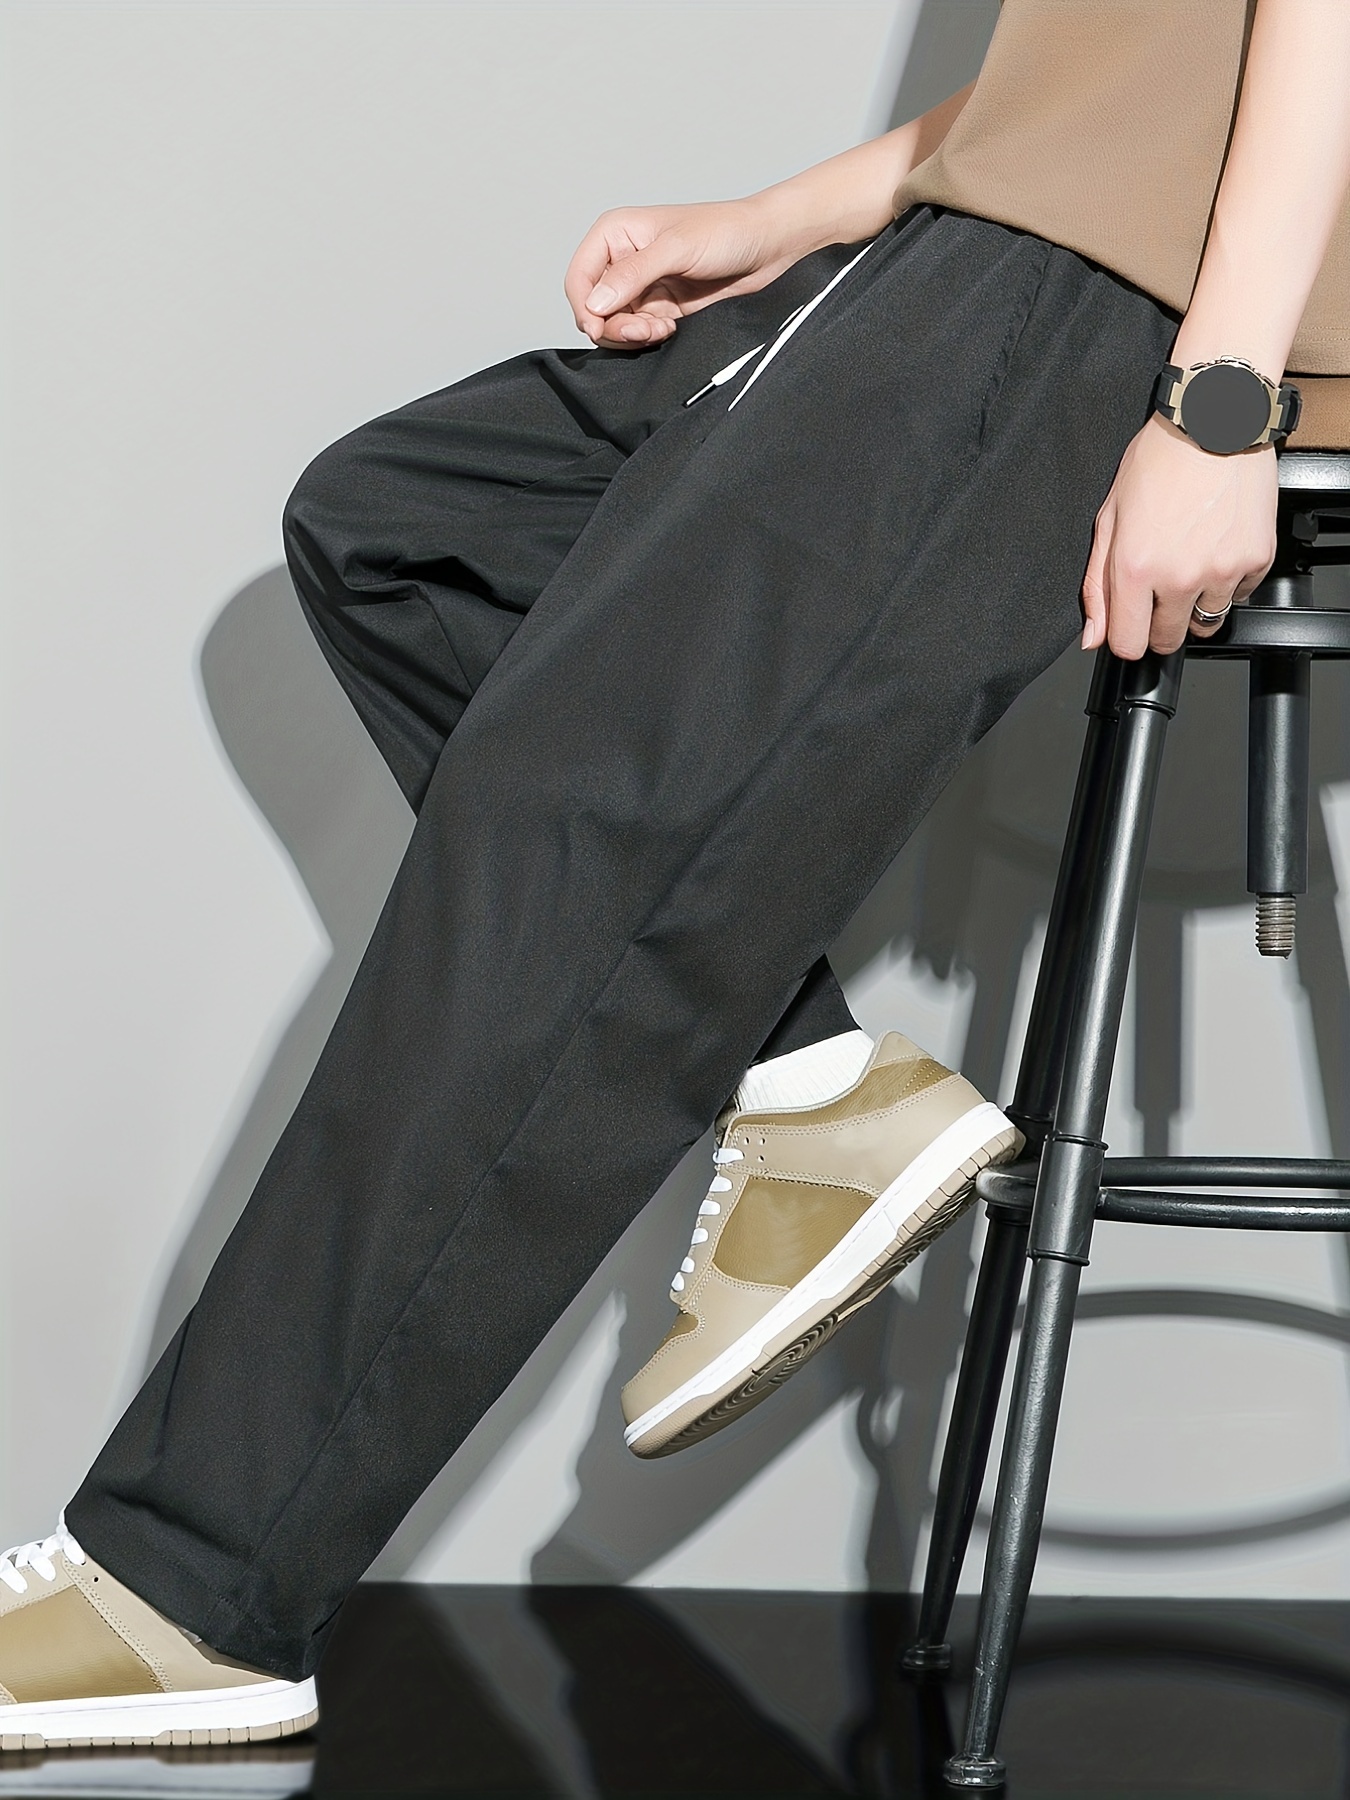 Men's Plain Drawstring Loose Comfy Trousers - Temu